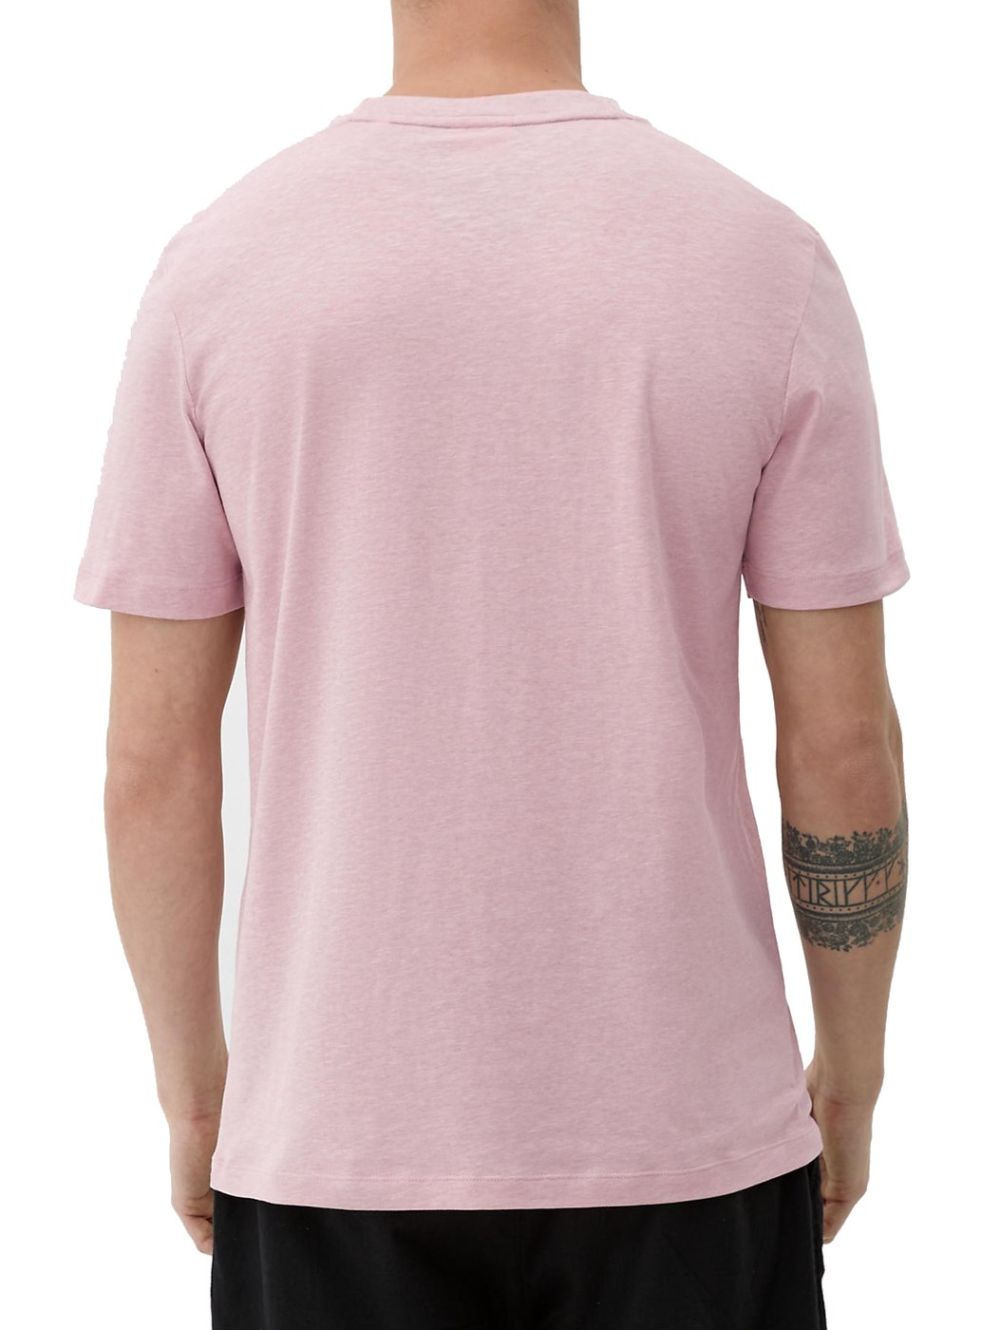 S.OLIVER Men\'s pink short-sleeved T-Shirt 2129852.41W2 Rose